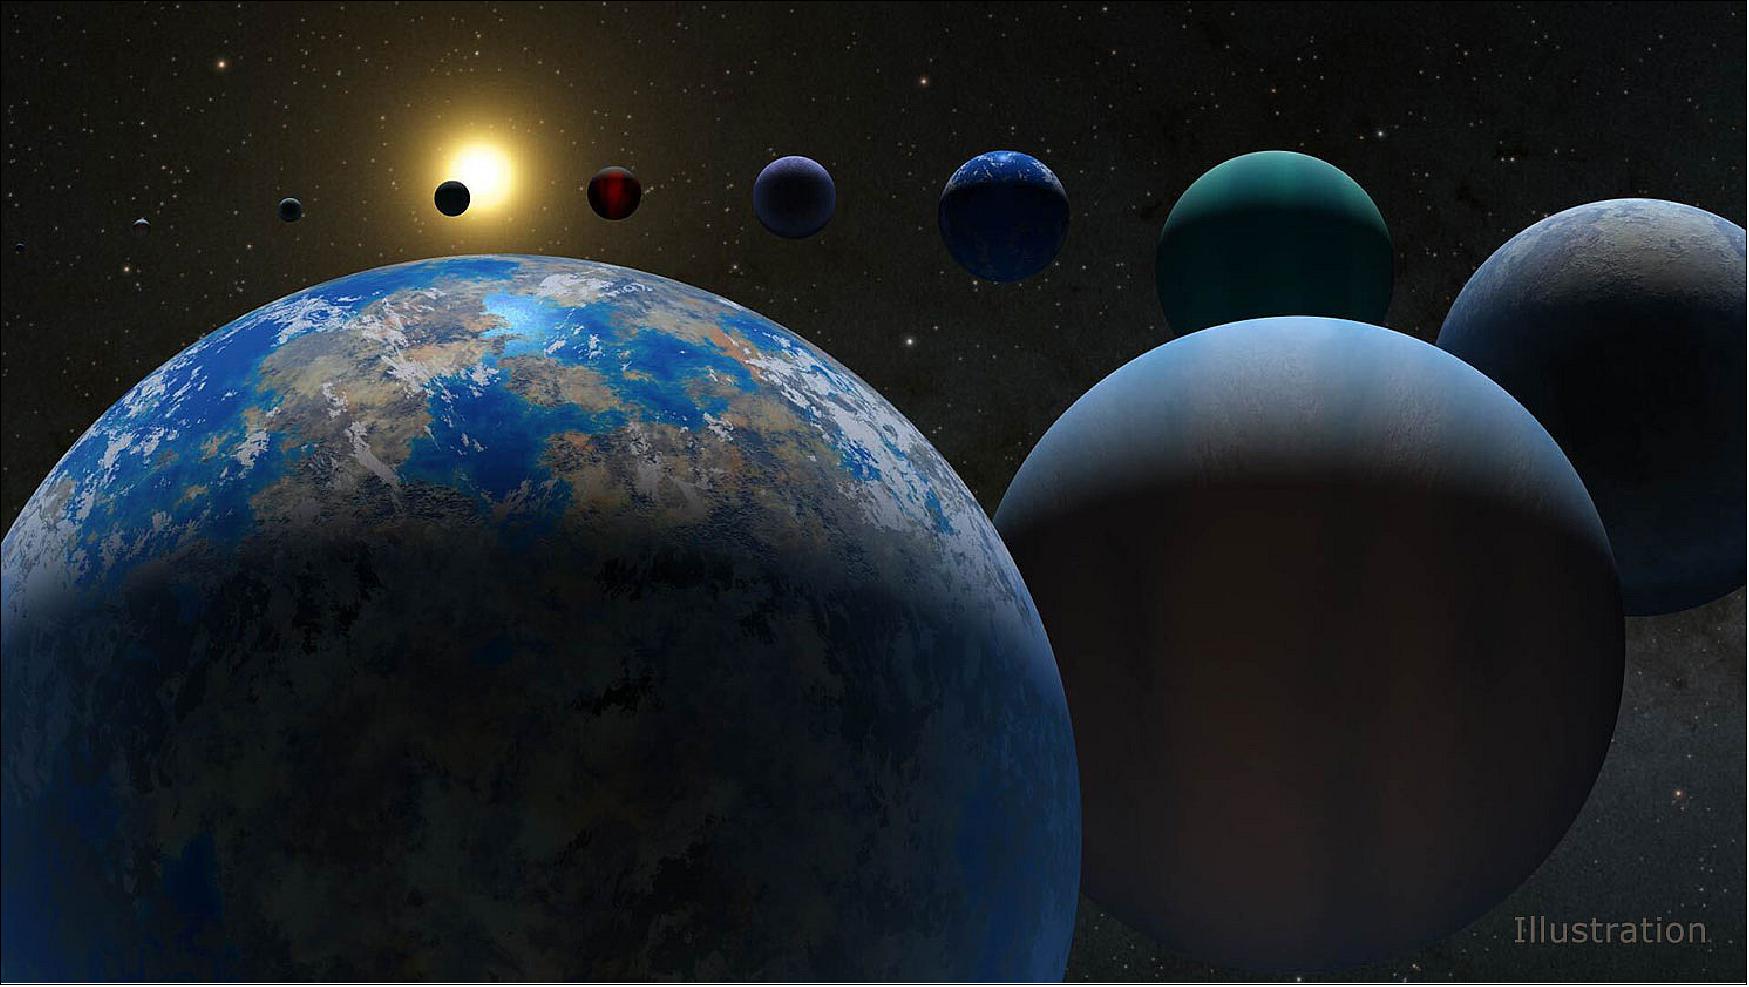 Tess scopre 85 pianeti potenzialmente abitabili, la NASA: ”Risultato incredibile”